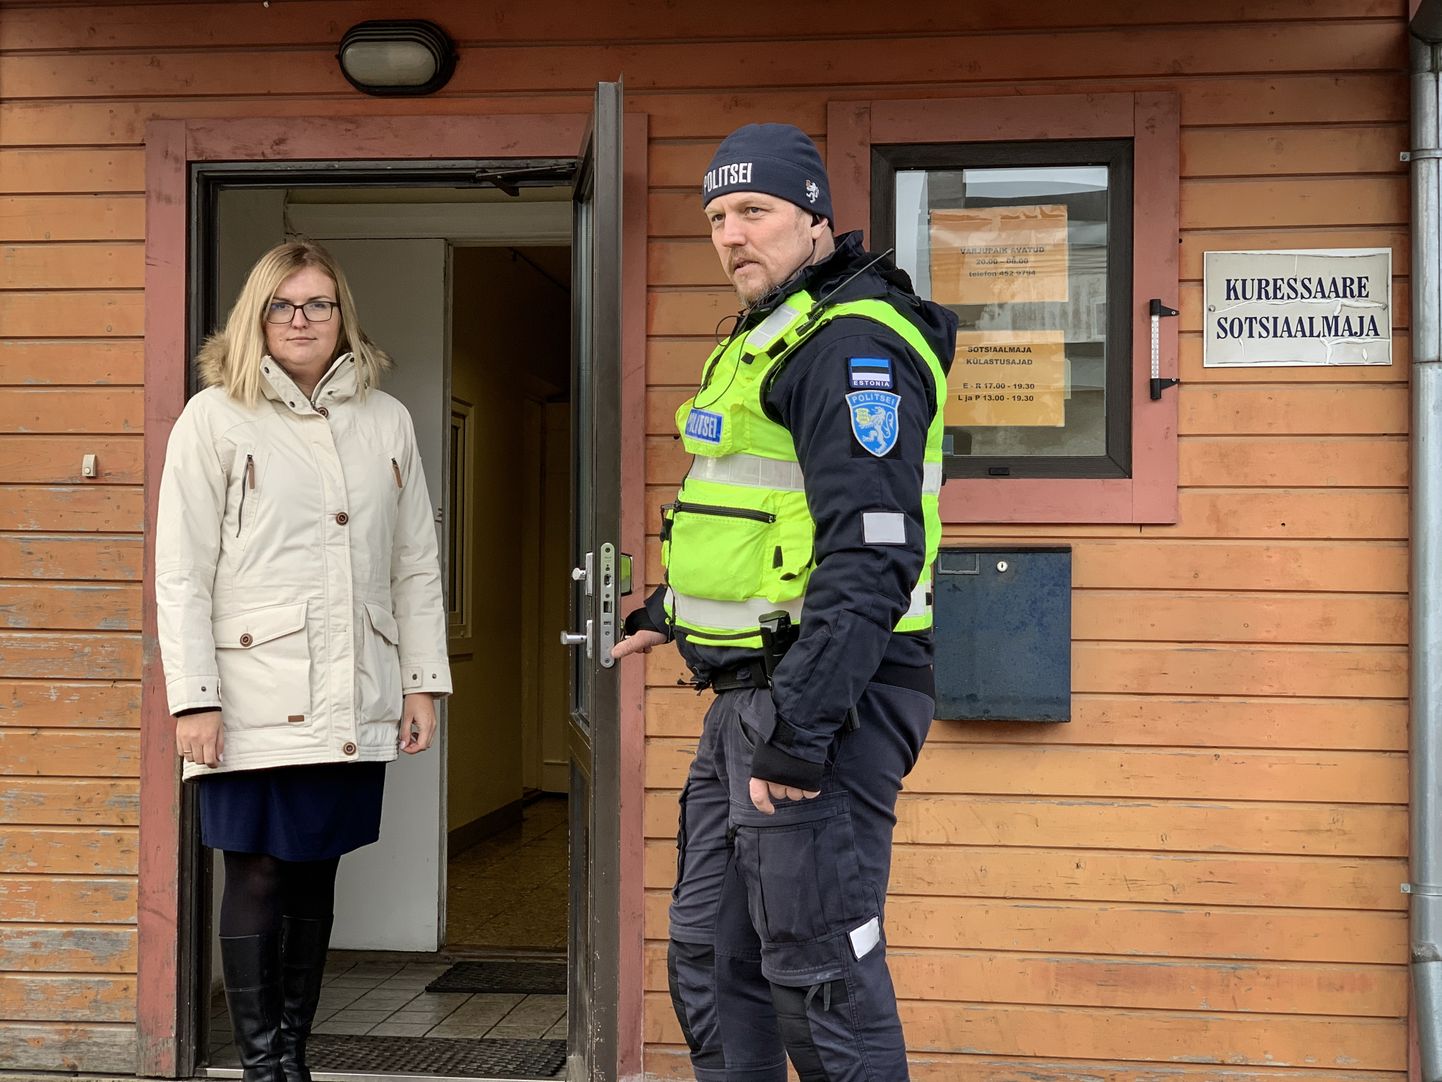 MURE VAJAB LAHENDUST: Abivallavanem Marili Niits ja politseinik Meelis Juhandi loodavad, et valla ja korrakaitsjate koostöö aitab elu sotsiaalmajas rahulikumaks muuta.